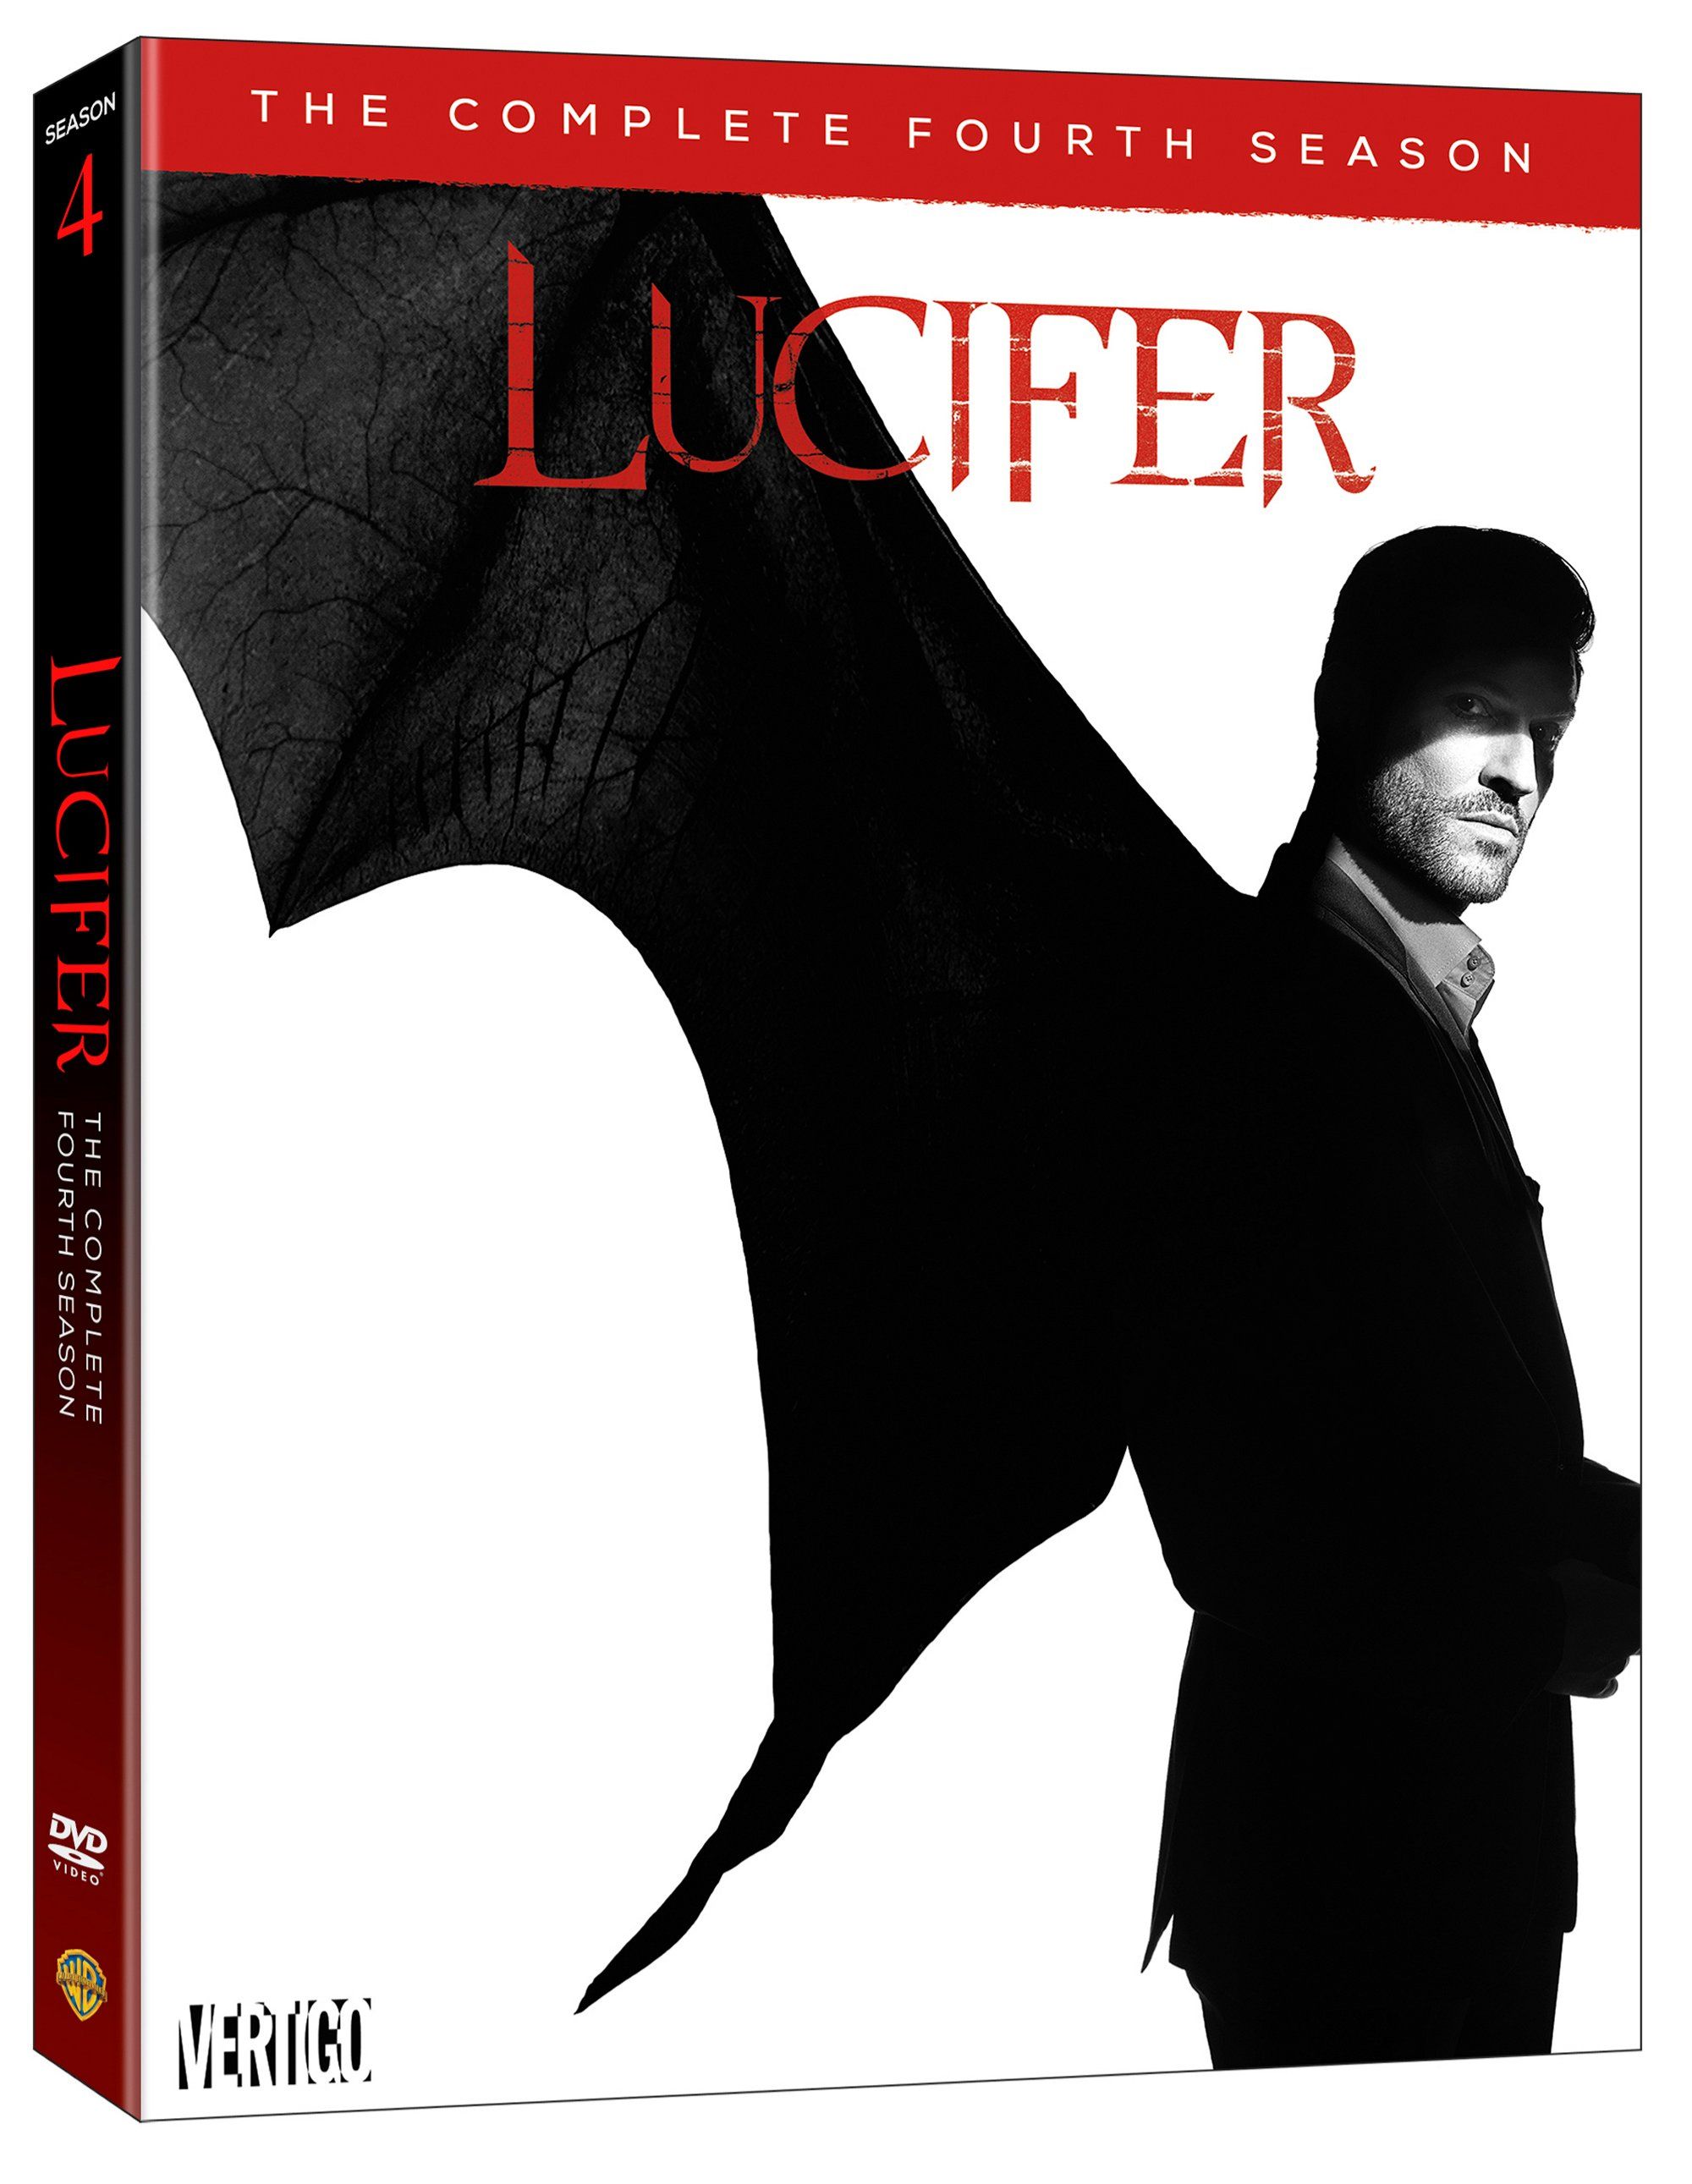 Lucifer season 4 DVD